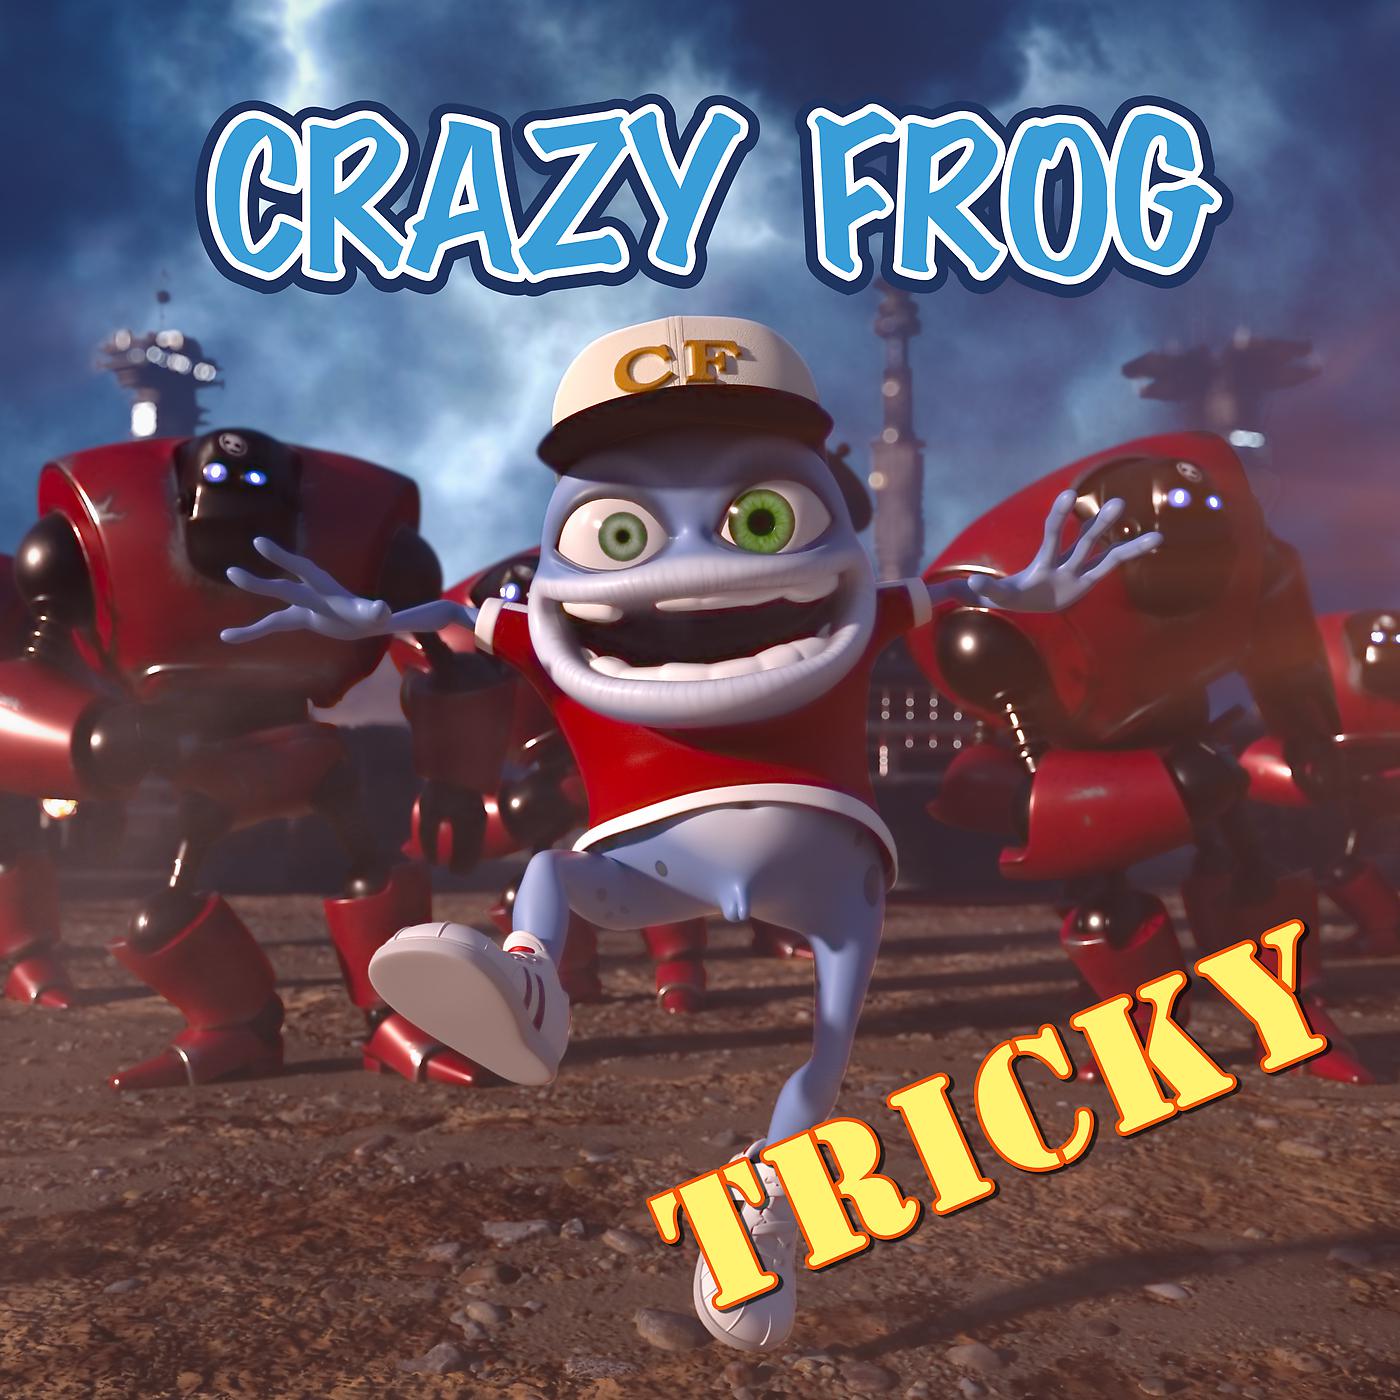 Crazy Frog 2021. Crazy Frog 2002. Crazy Frog tricky. Лягушка Crazy Frog. Музыка крейзи фрог слушать